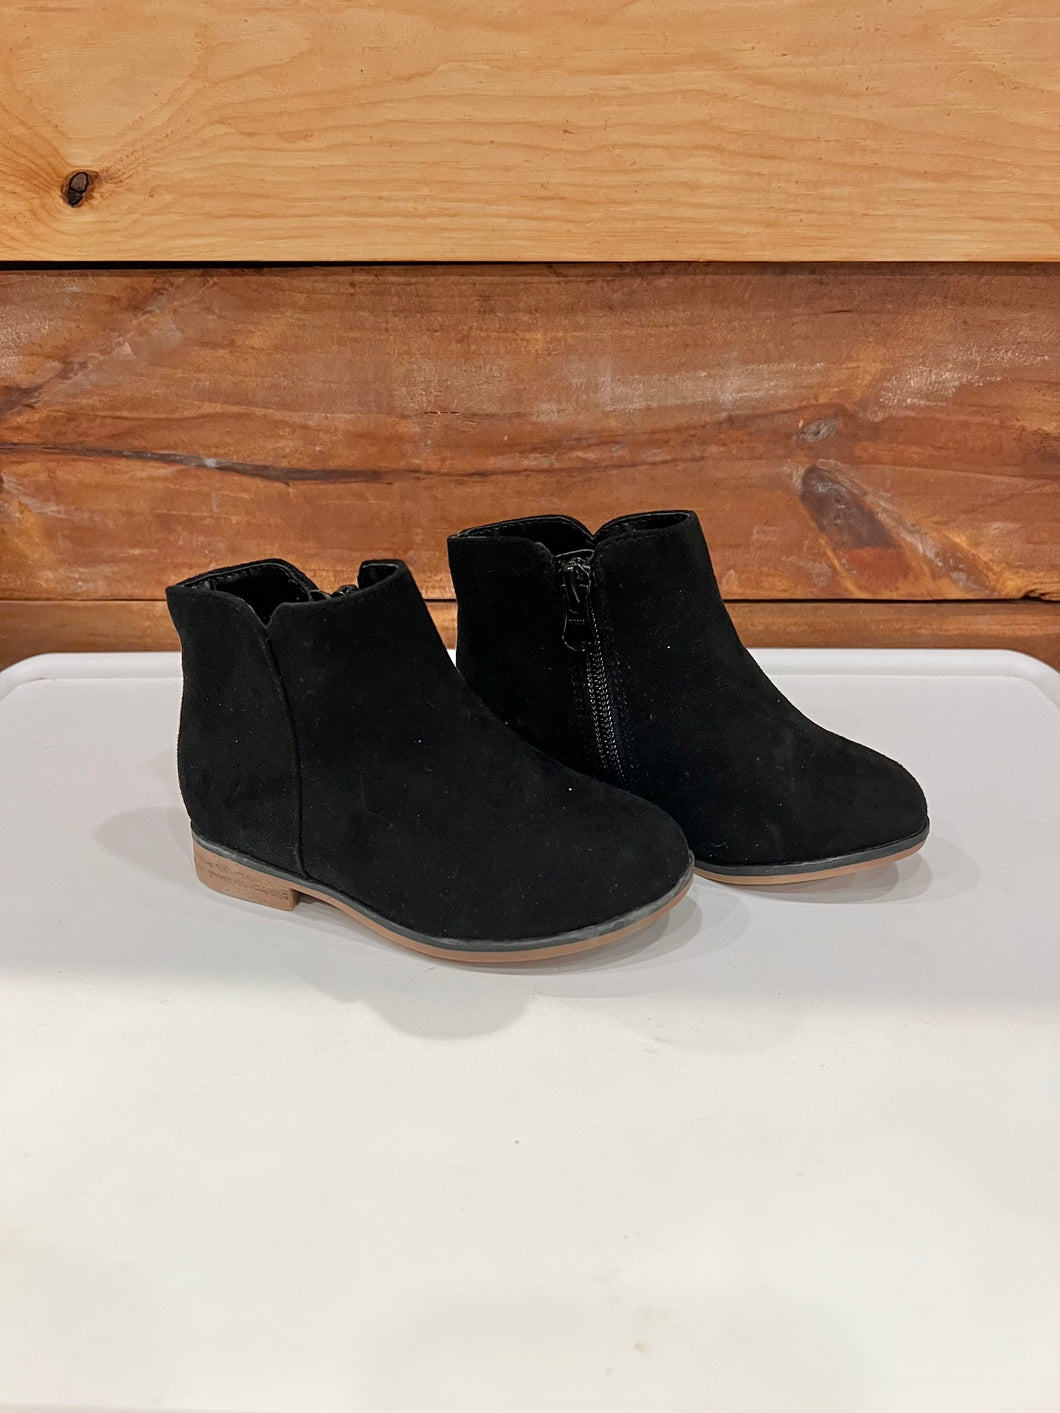 Cat & Jack Black Boots Size 7